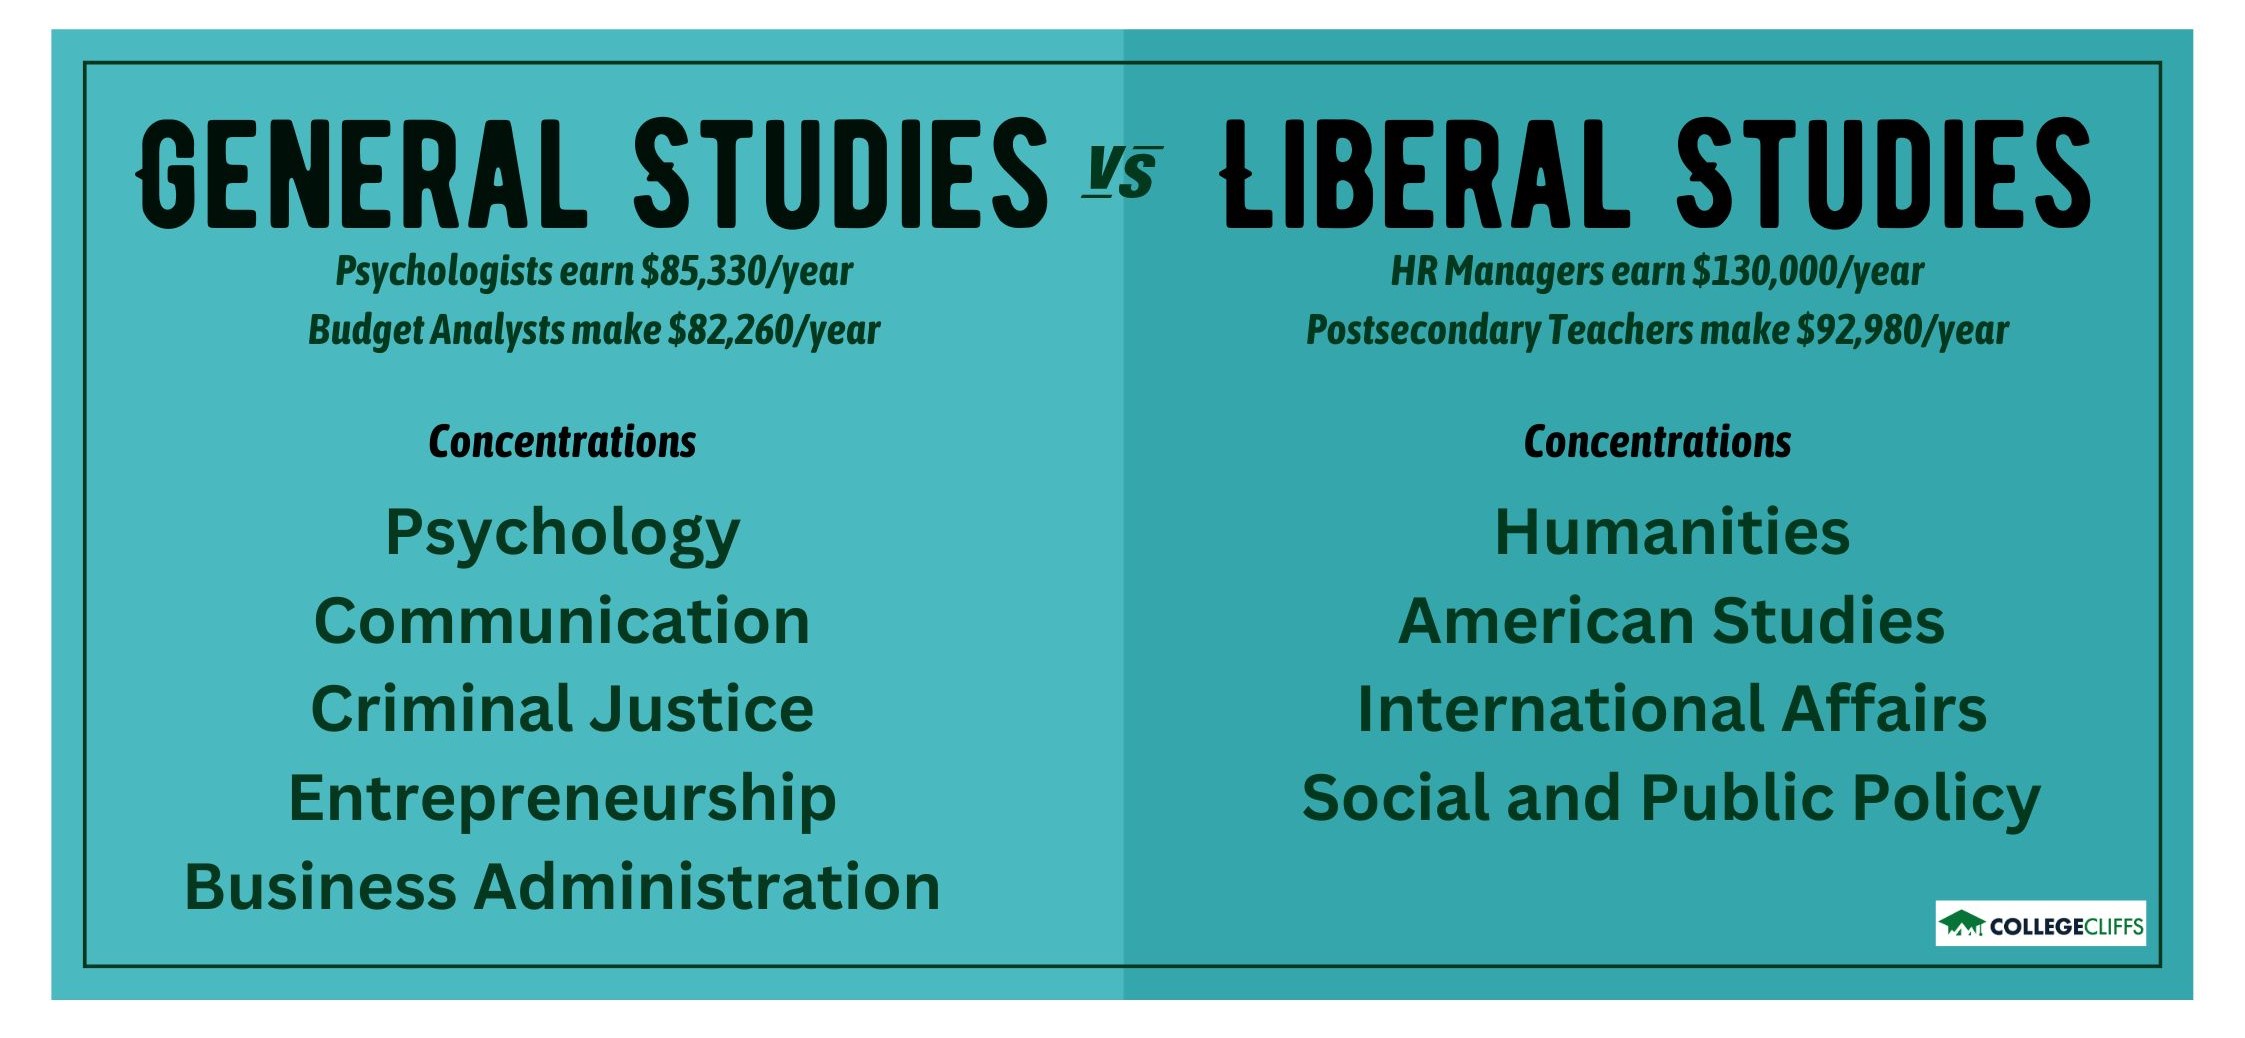 general studies vs liberal studies - fact